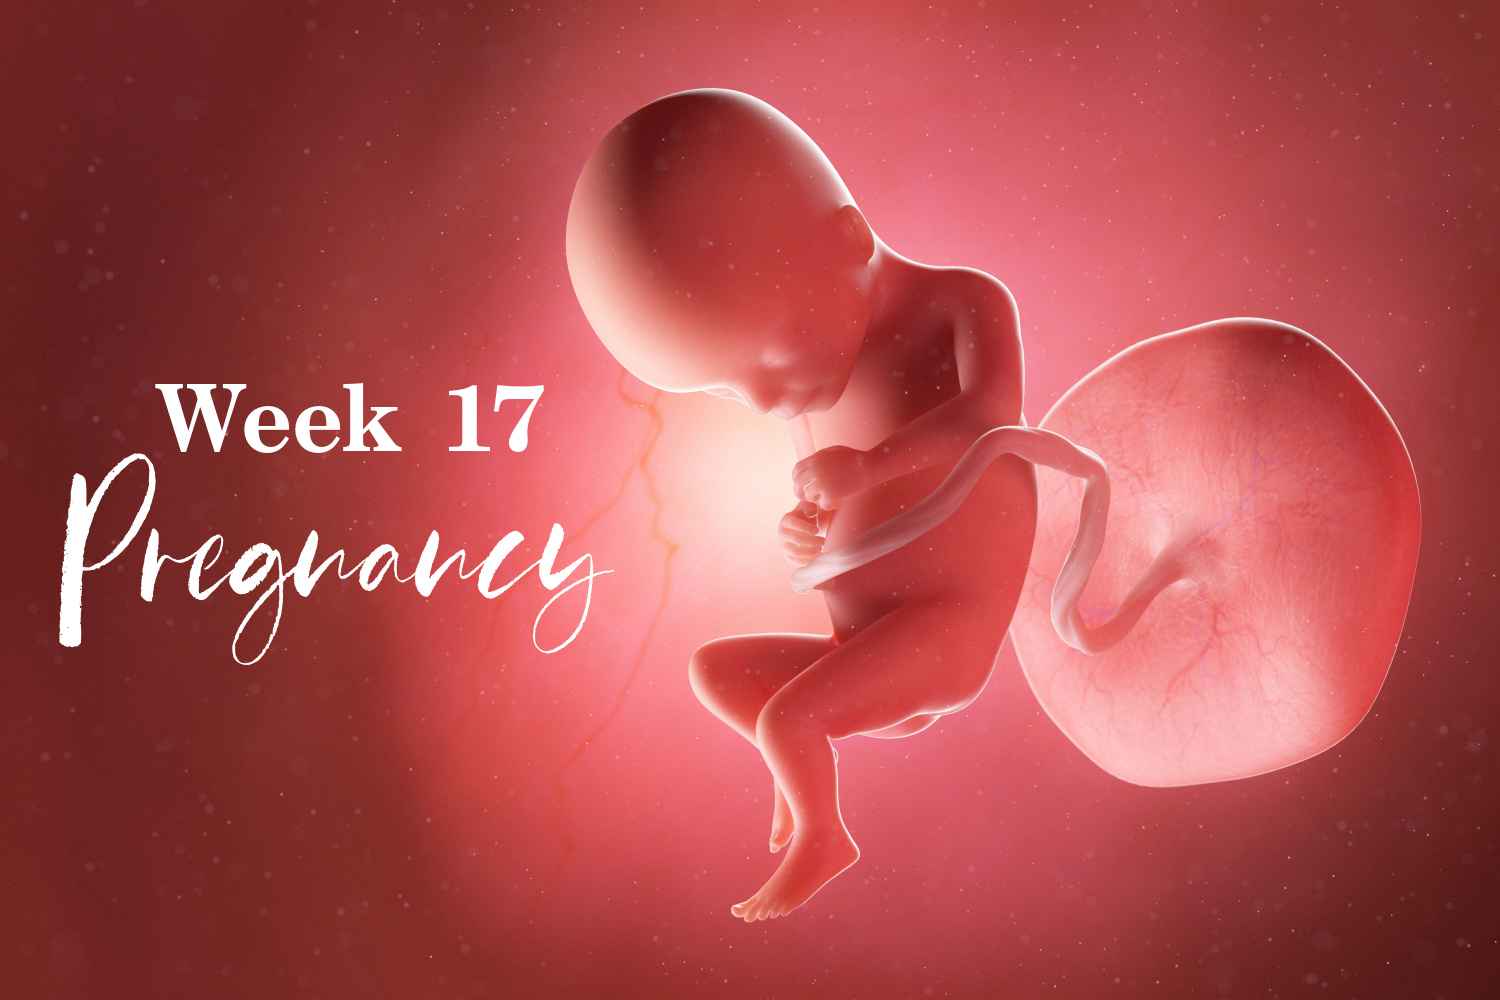 pregnancy week 17